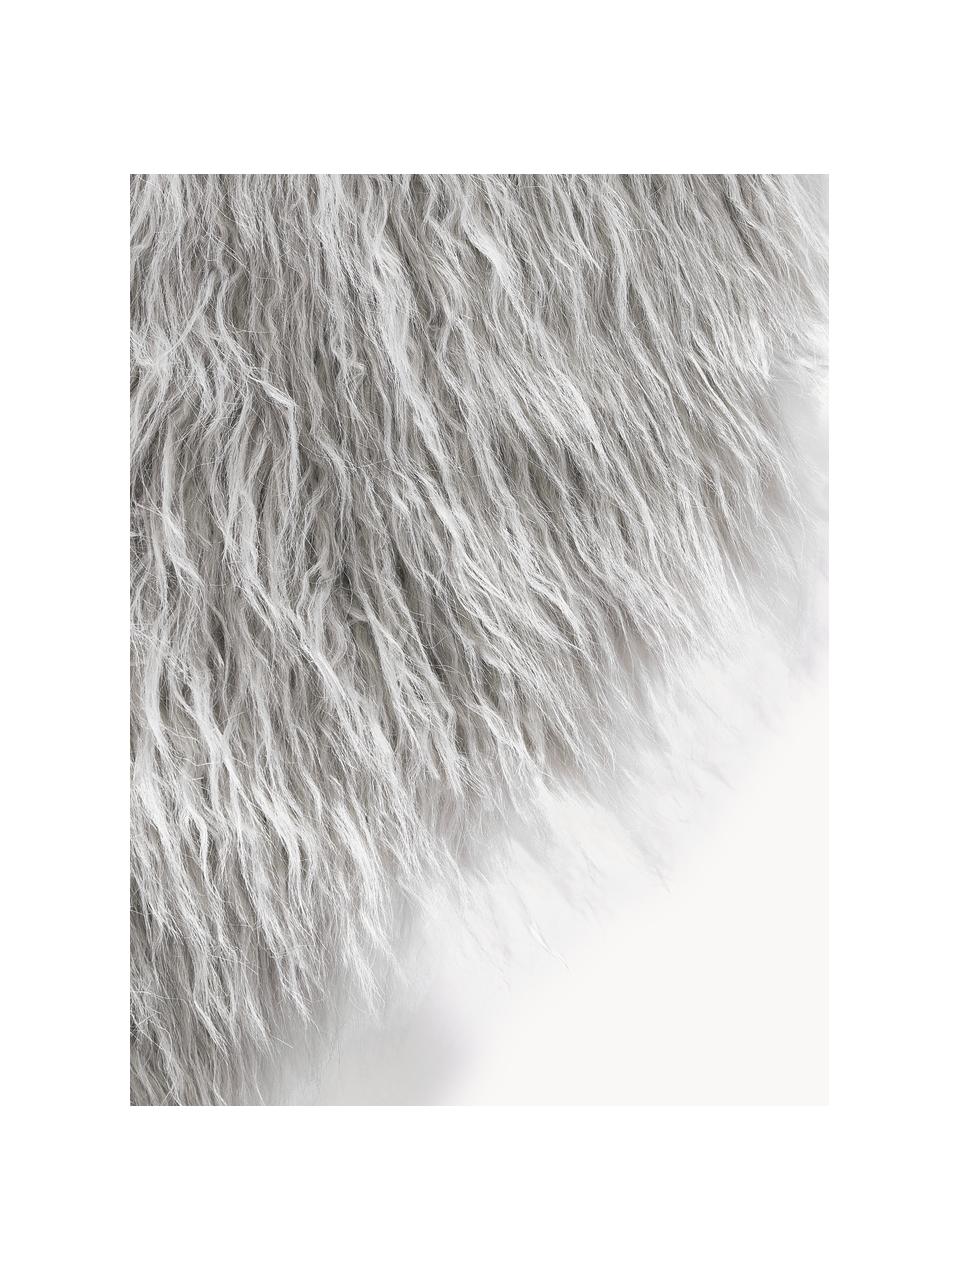 Sztuczne futro Morten, kręcone włosie, Jasny szary, S 60 x D 90 cm